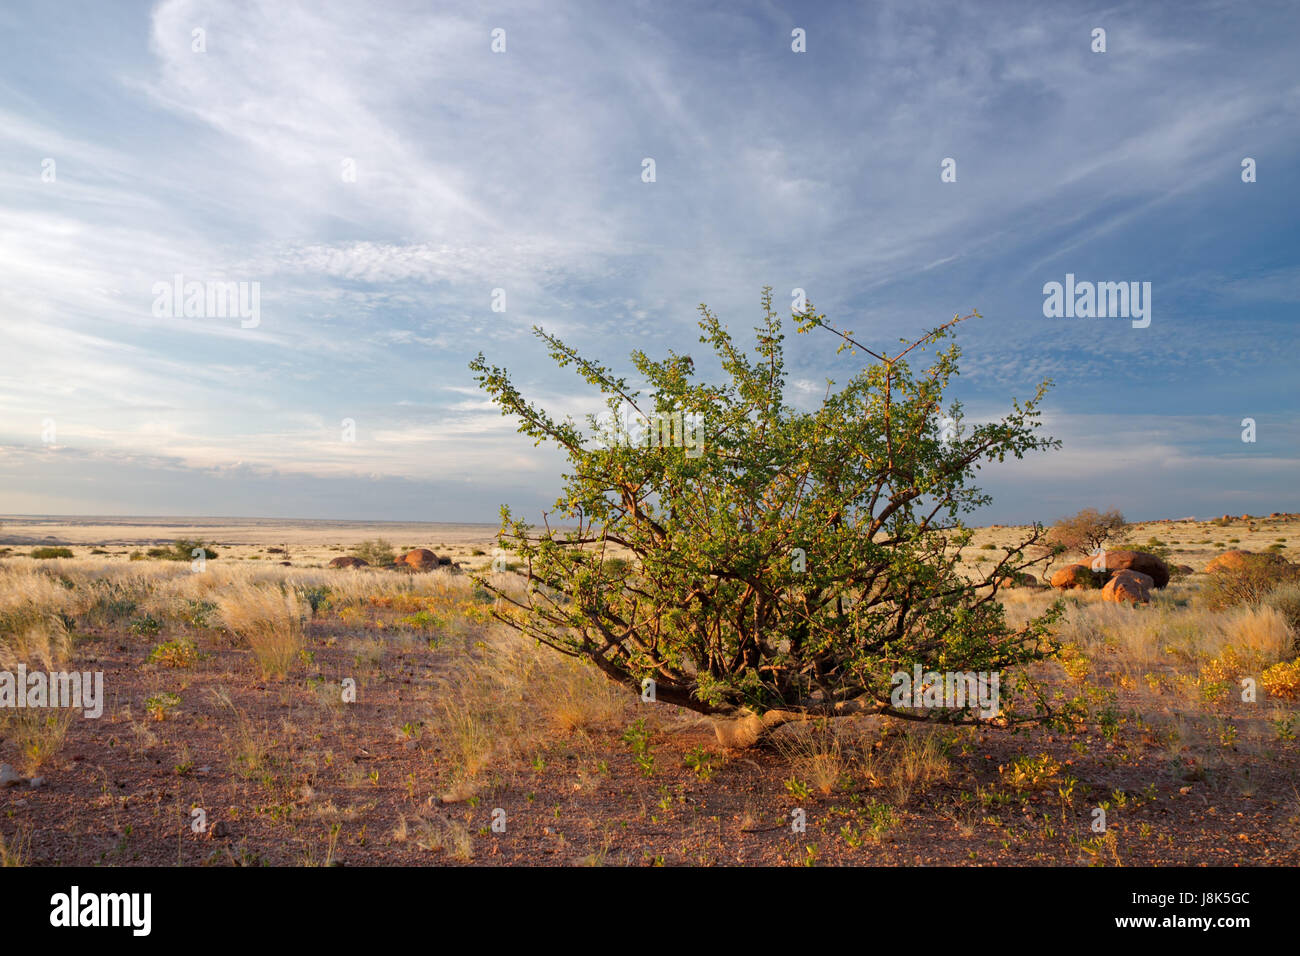 desert, wasteland, africa, namibia, shrub, African, landscape, scenery, Stock Photo